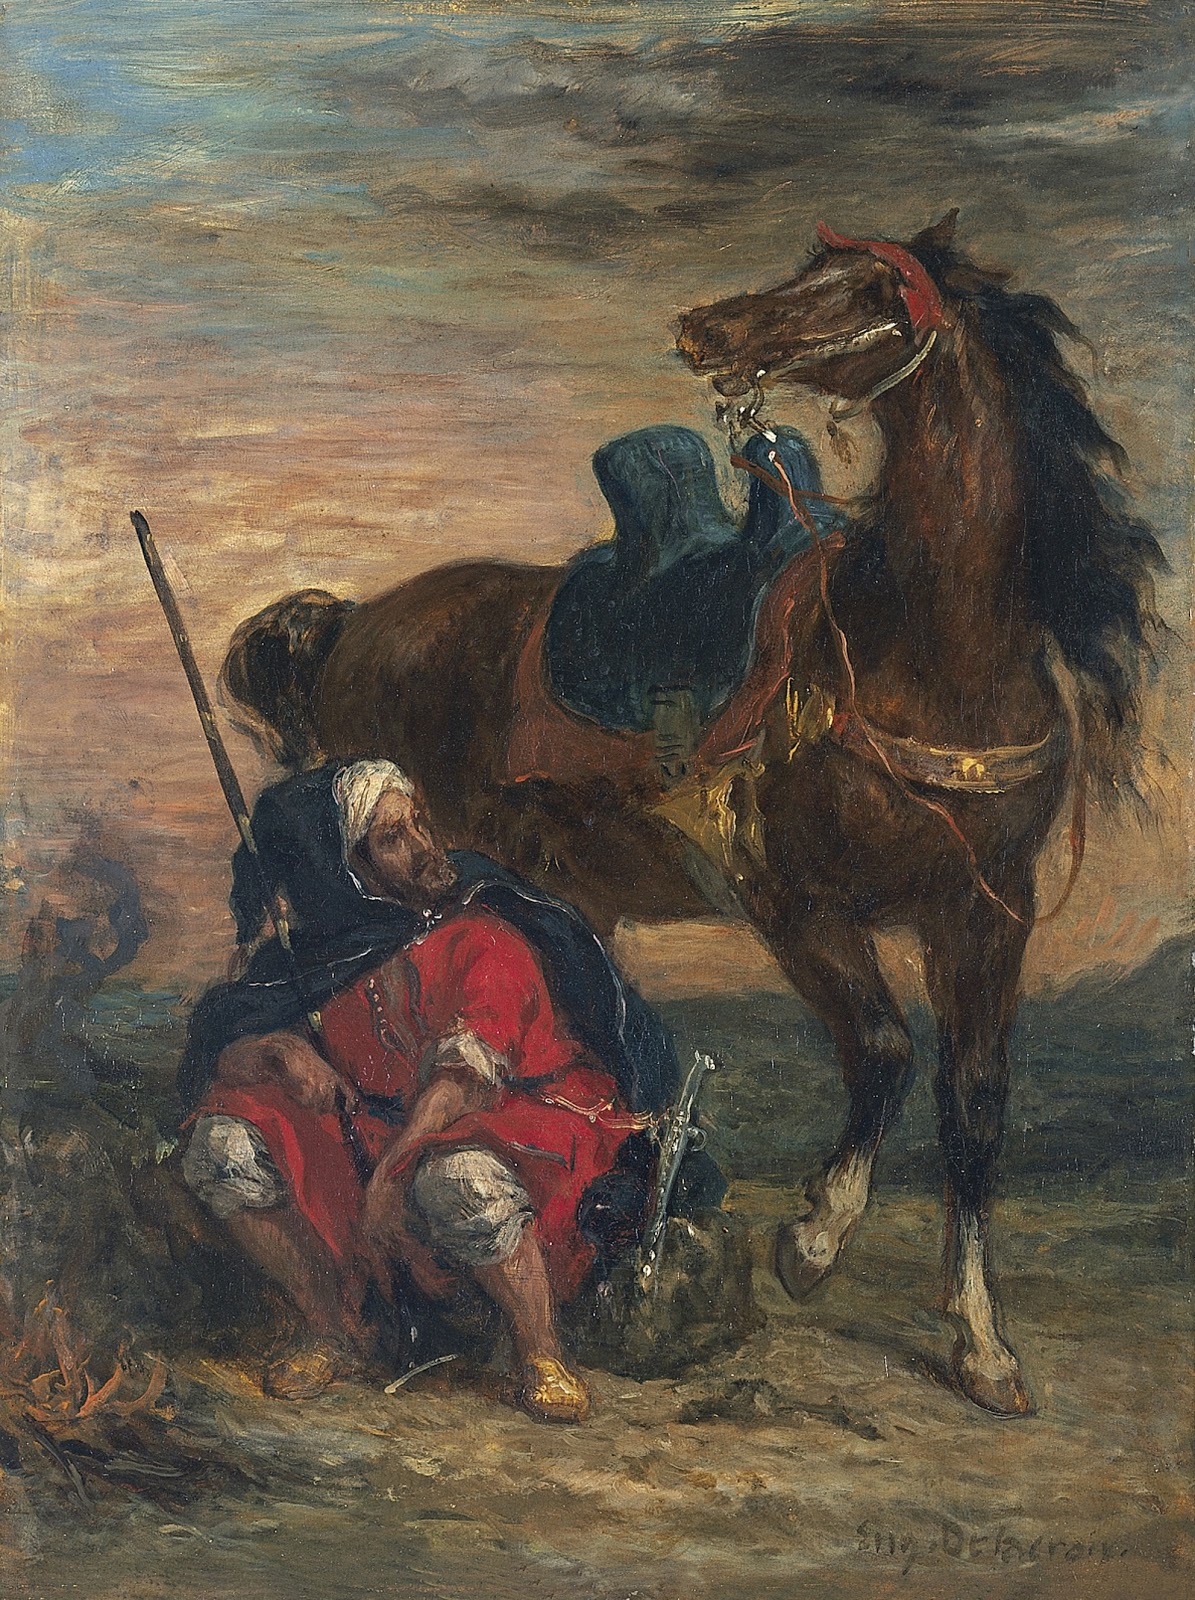 Eugene+Delacroix-1798-1863 (276).jpg